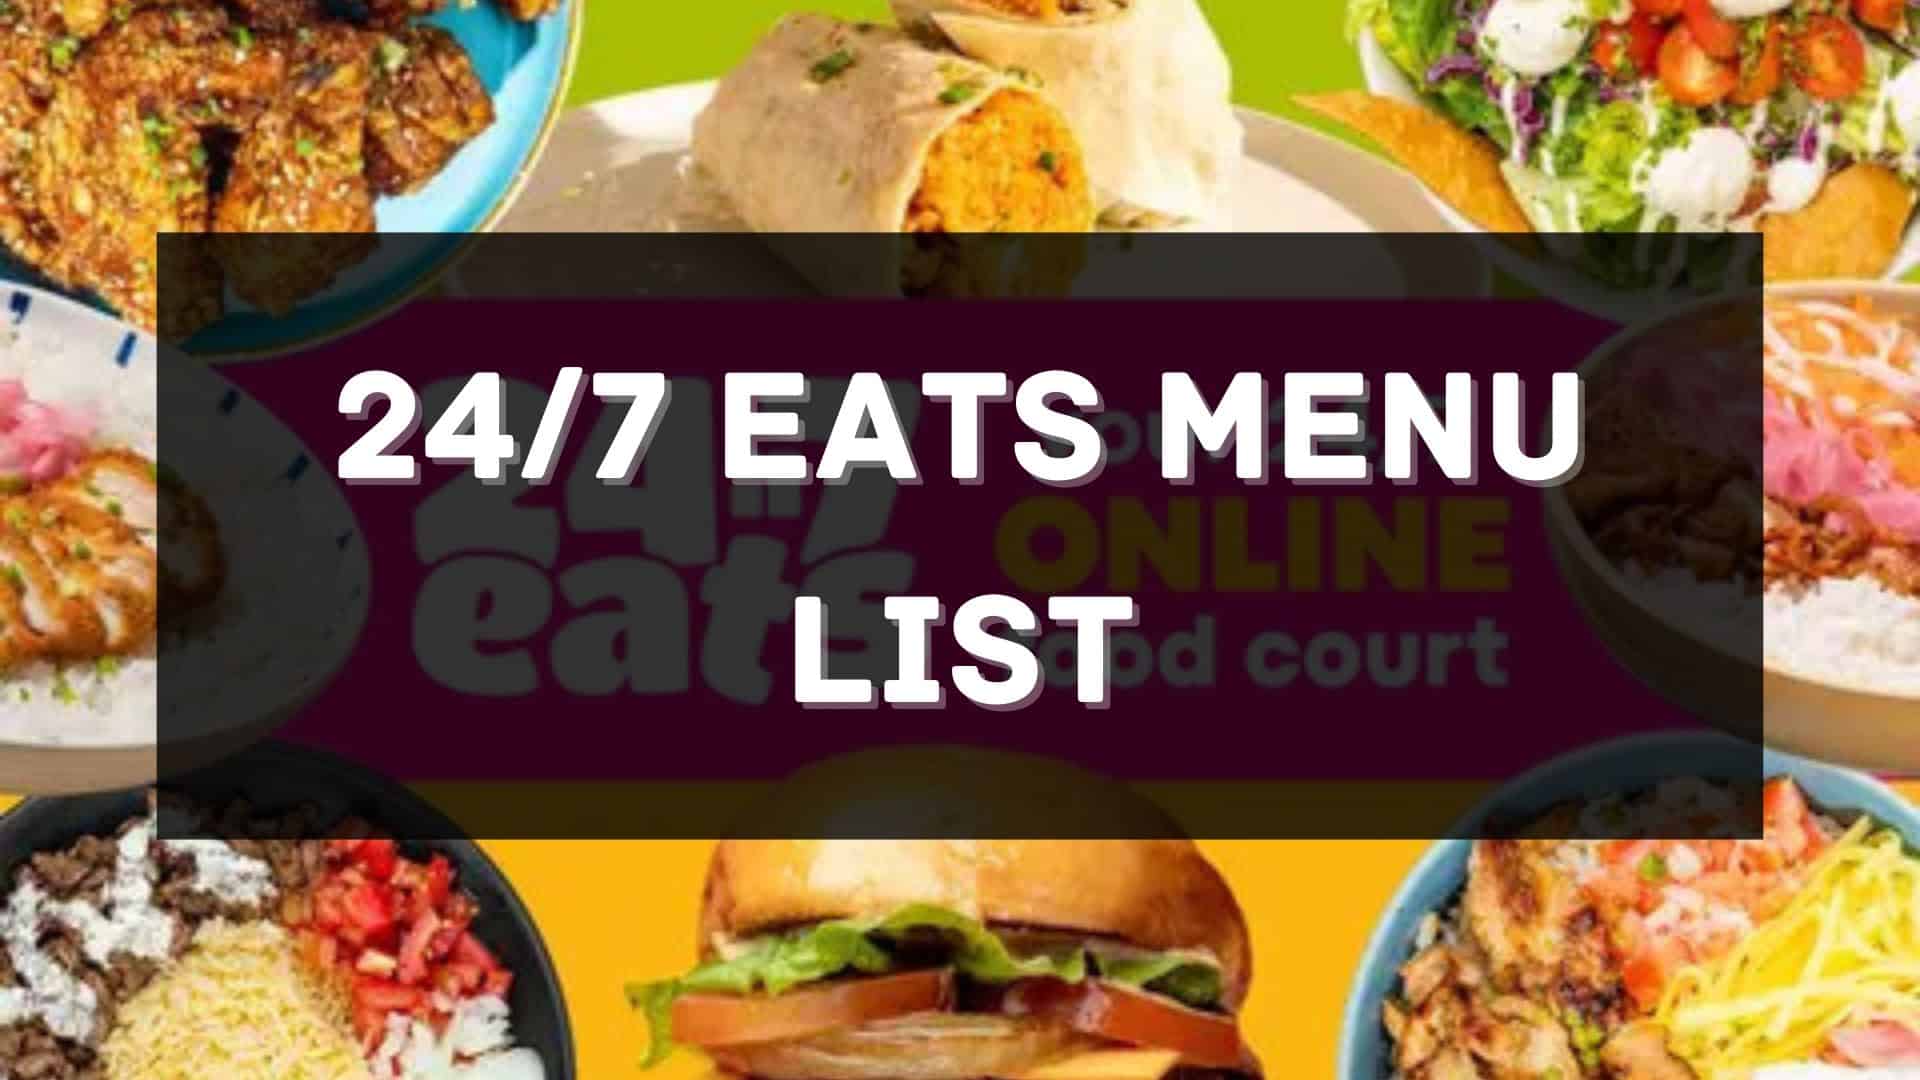 24/7 eats menu prices philippines